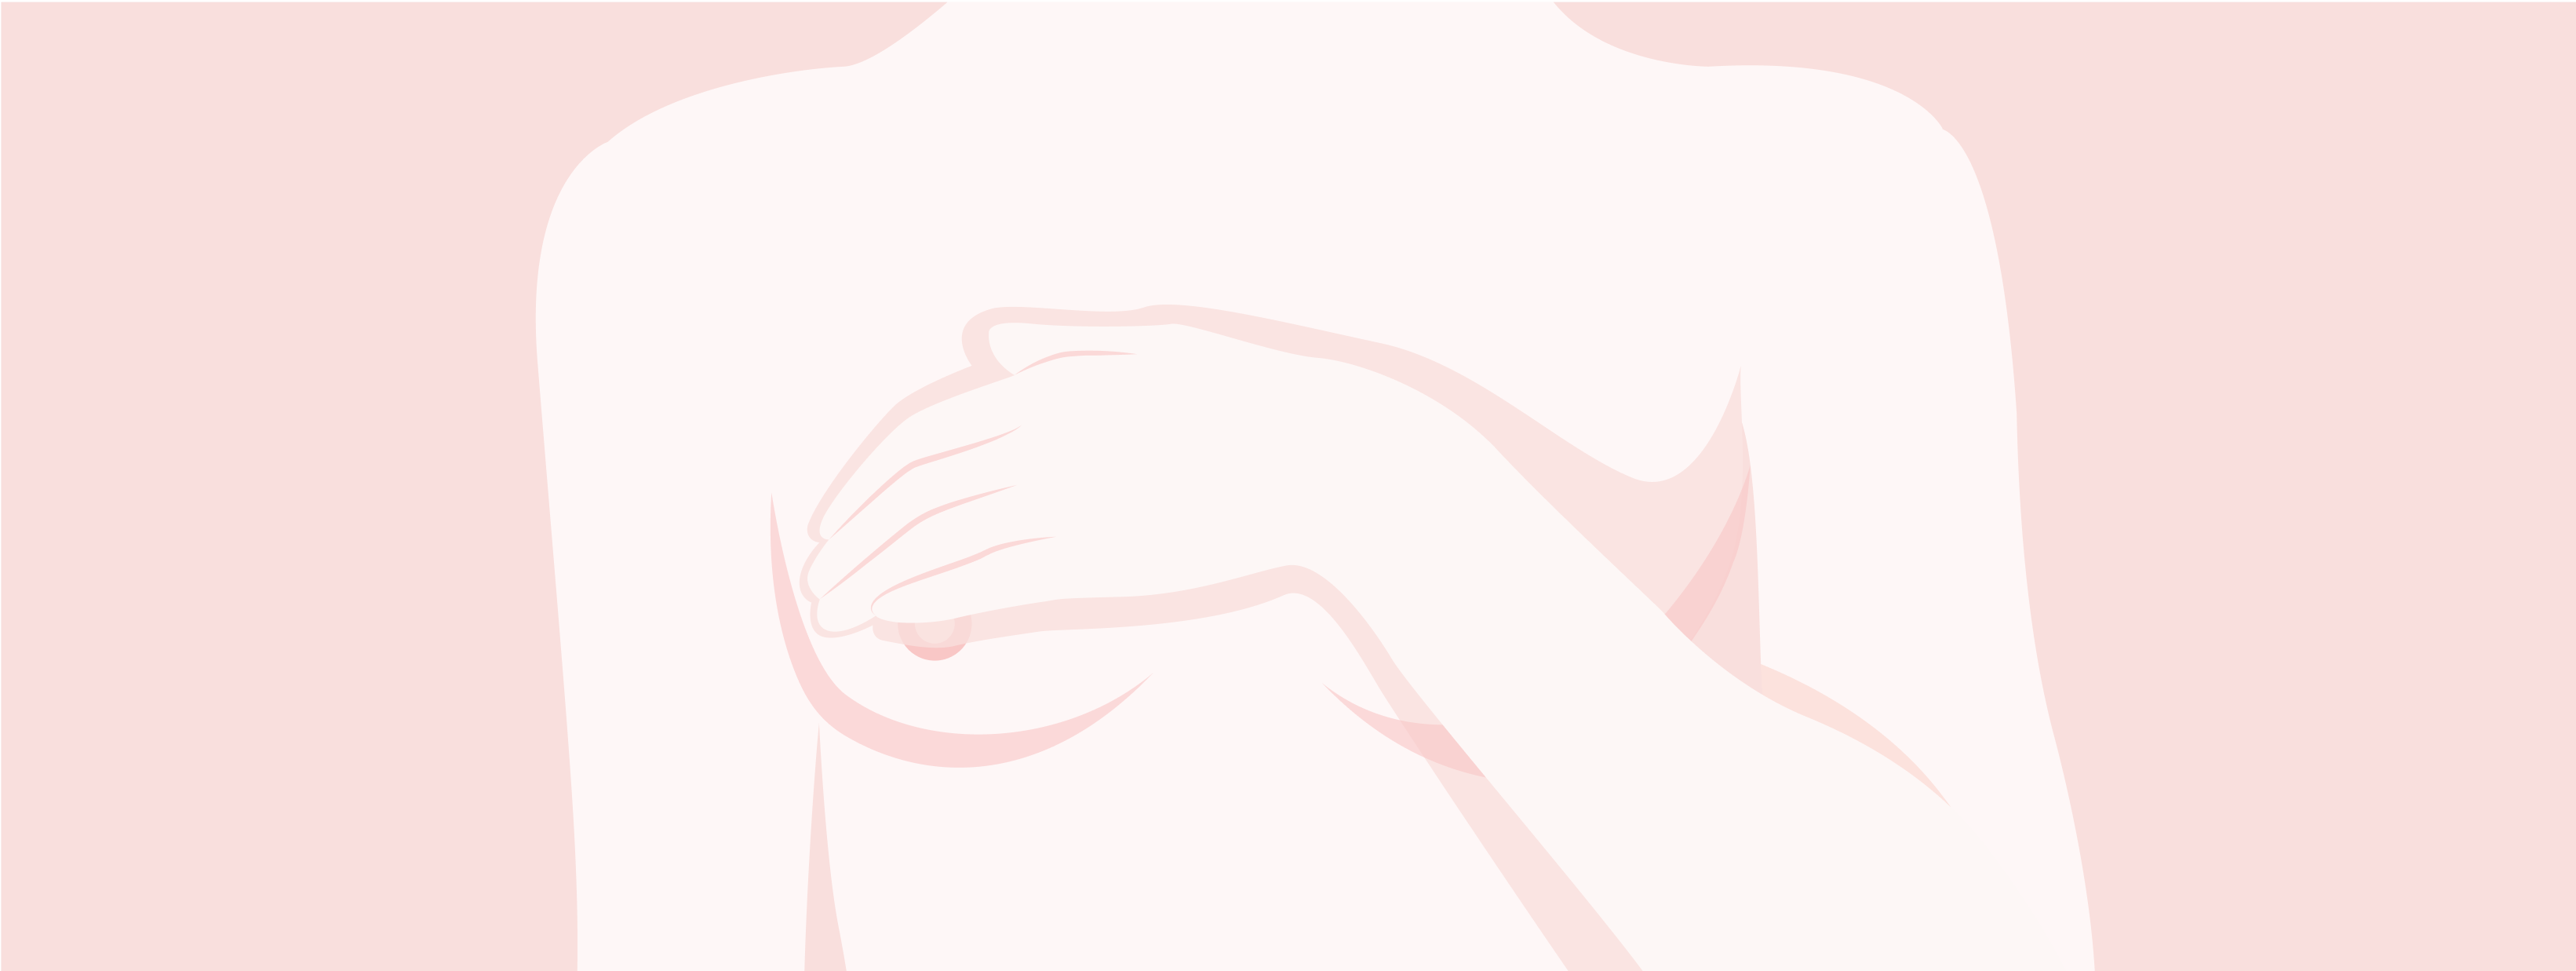 Brustkrebs. Weiblicher Oberkörper Frau hält eine Hand an die Brust.